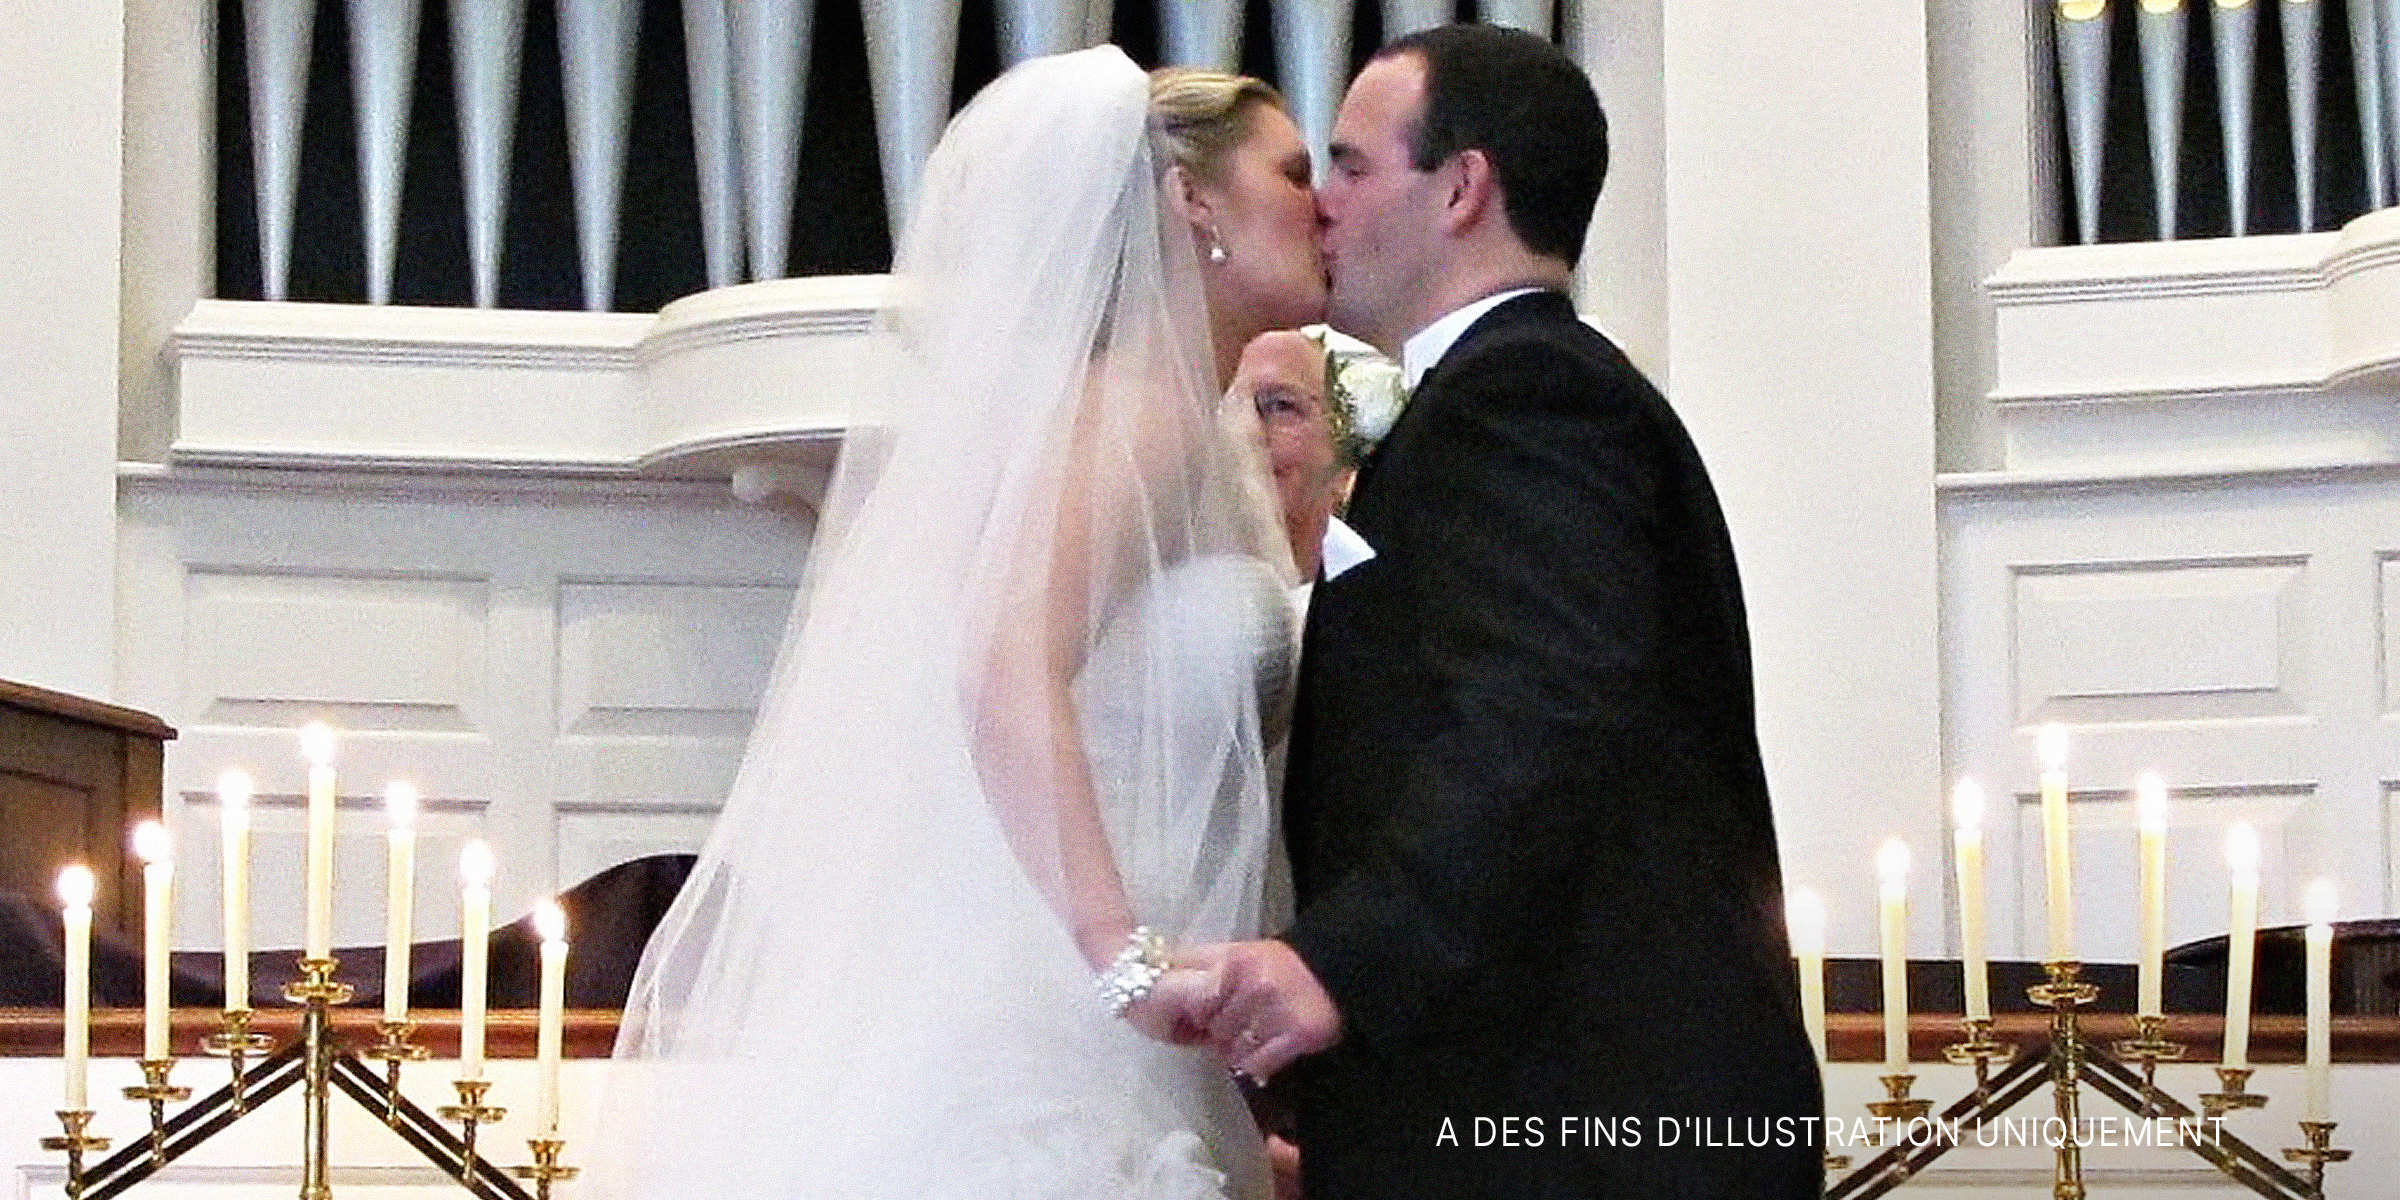 Premier baiser d'un couple devant l'autel | Source : Flickr